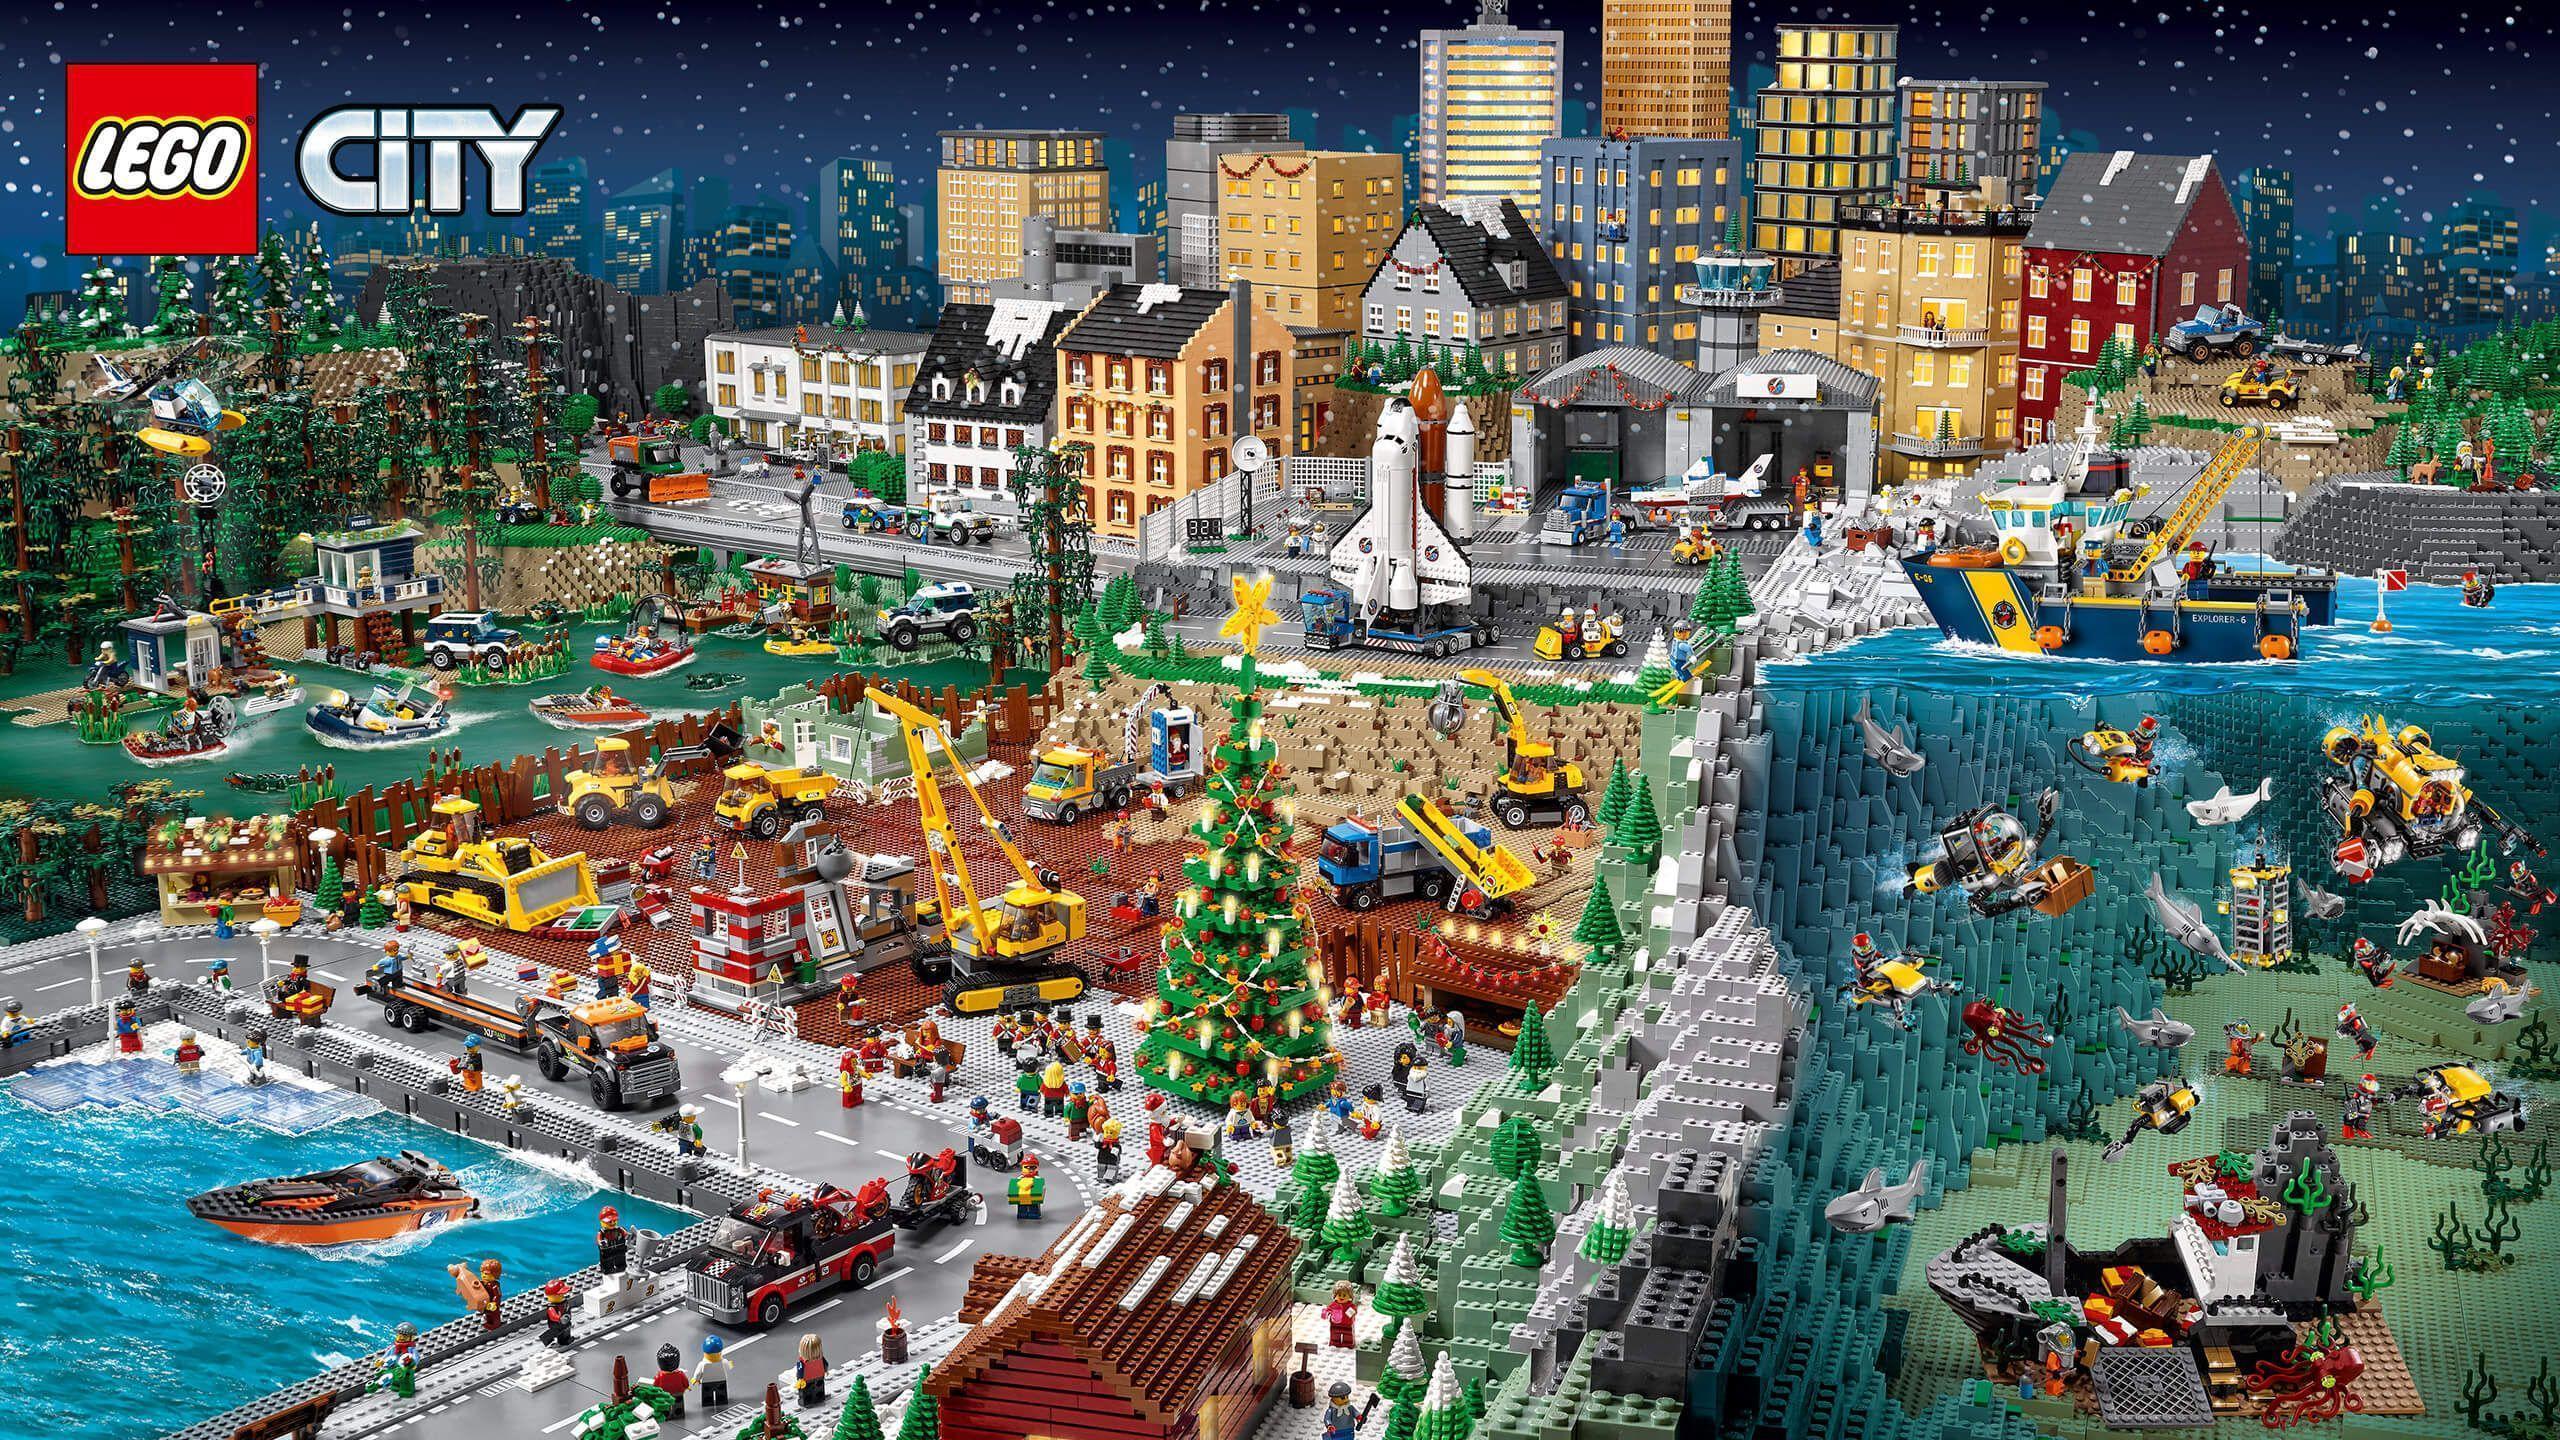 Lego City Wallpaper